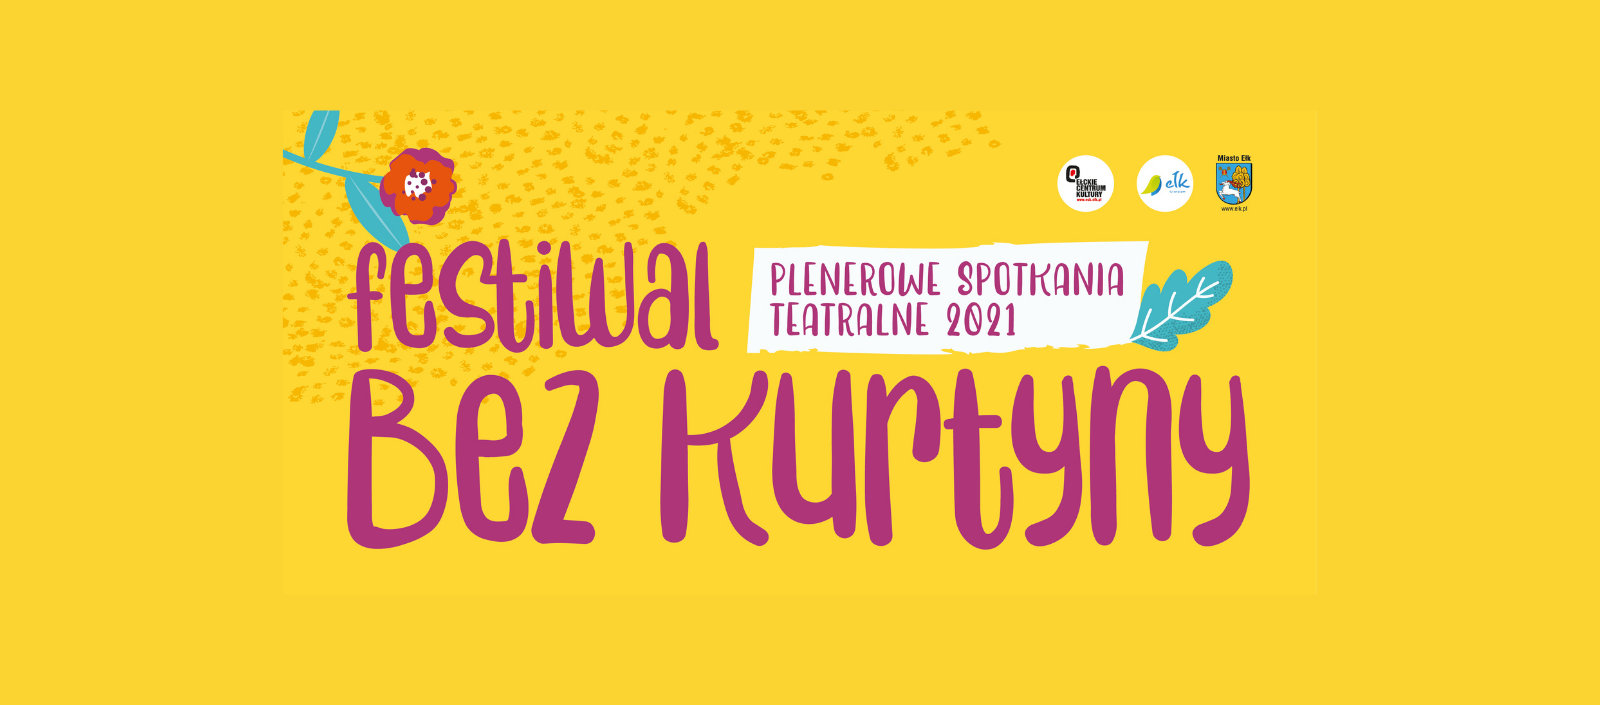 Plenerowe Spotkania Teatralne Festiwal Bez Kurtyny